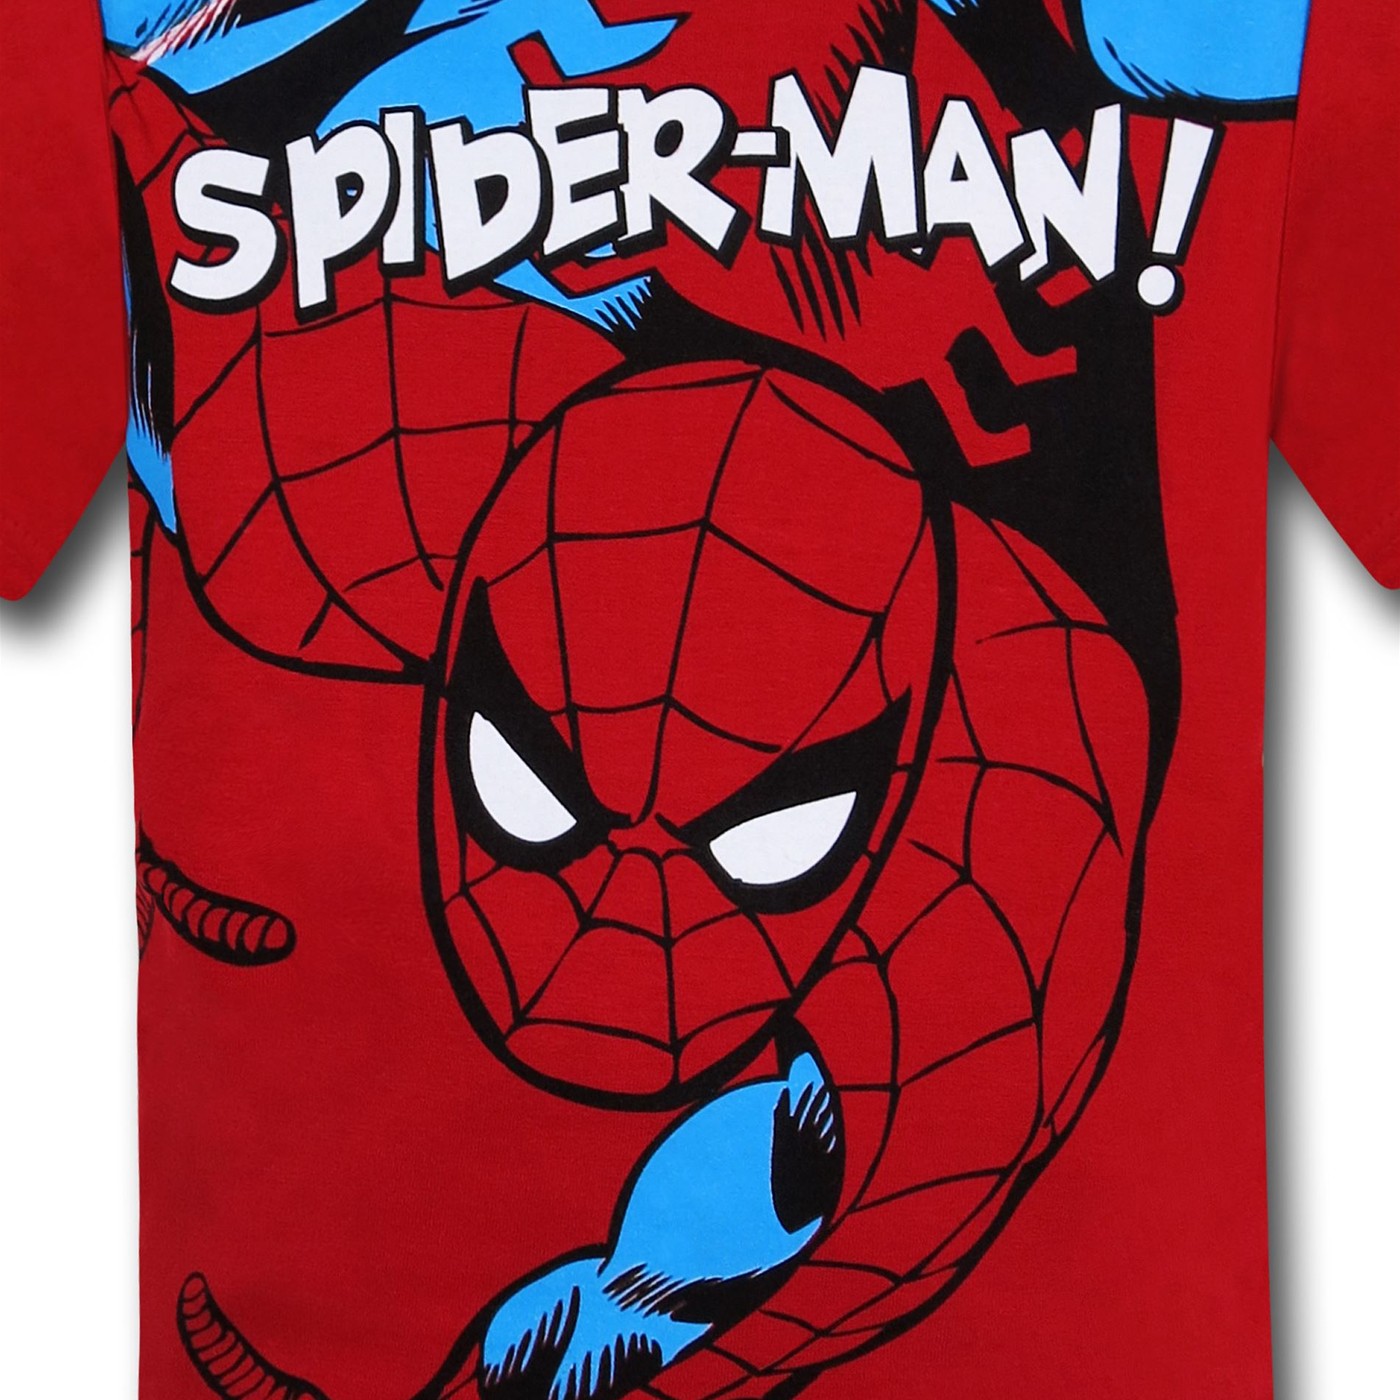 Spiderman Kids Shirt & Plaid Shorts Set